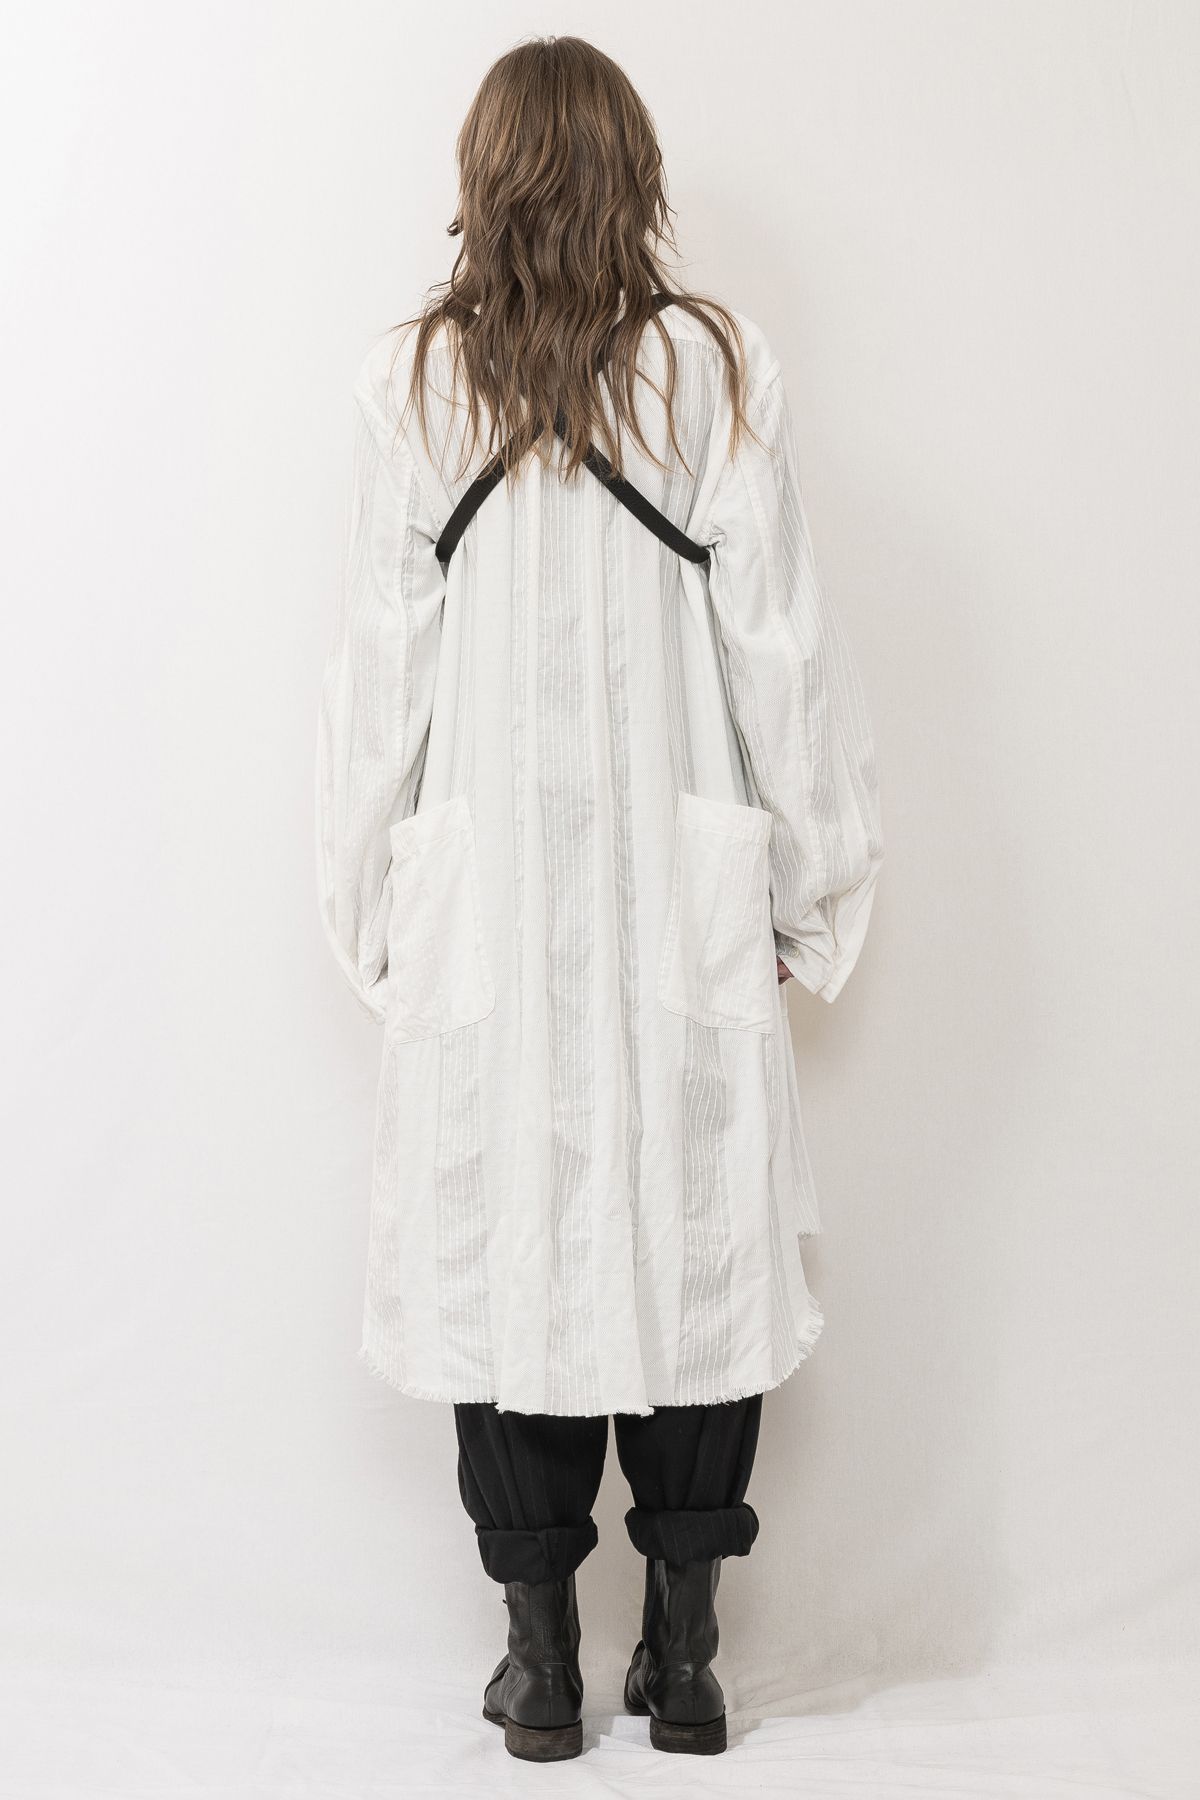 nude:masahiko maruyama - Gament Dyeing Oversized Long Shirts"White